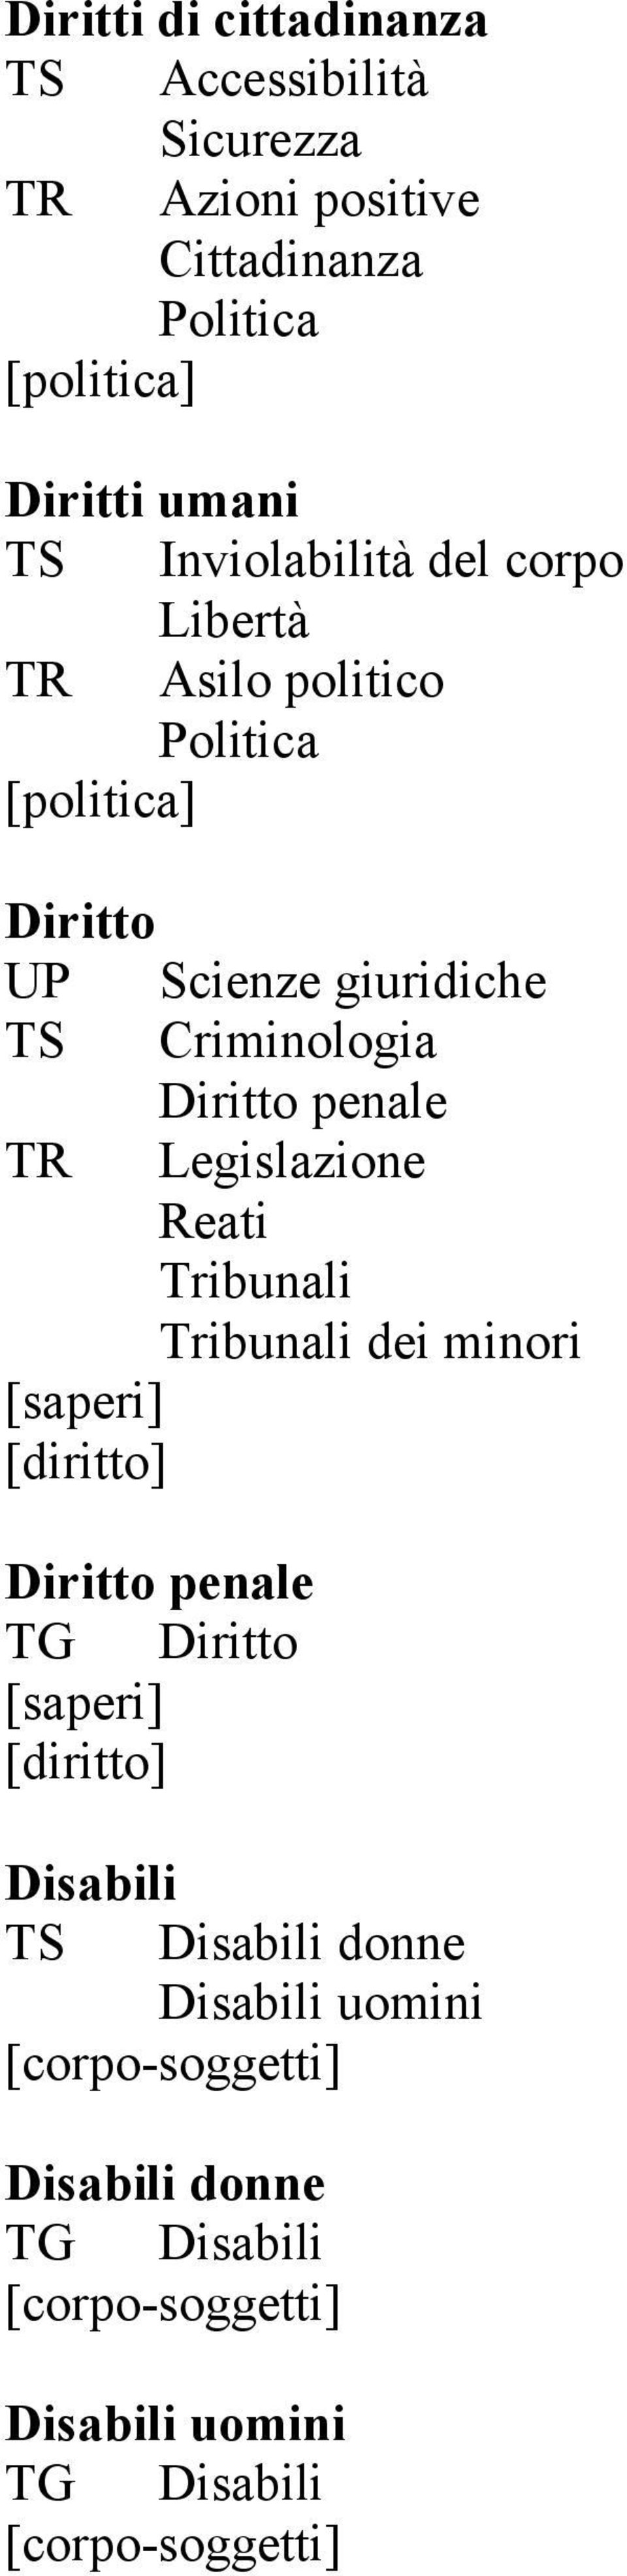 Criminologia Diritto penale TR Legislazione Reati Tribunali Tribunali dei minori [diritto] Diritto penale